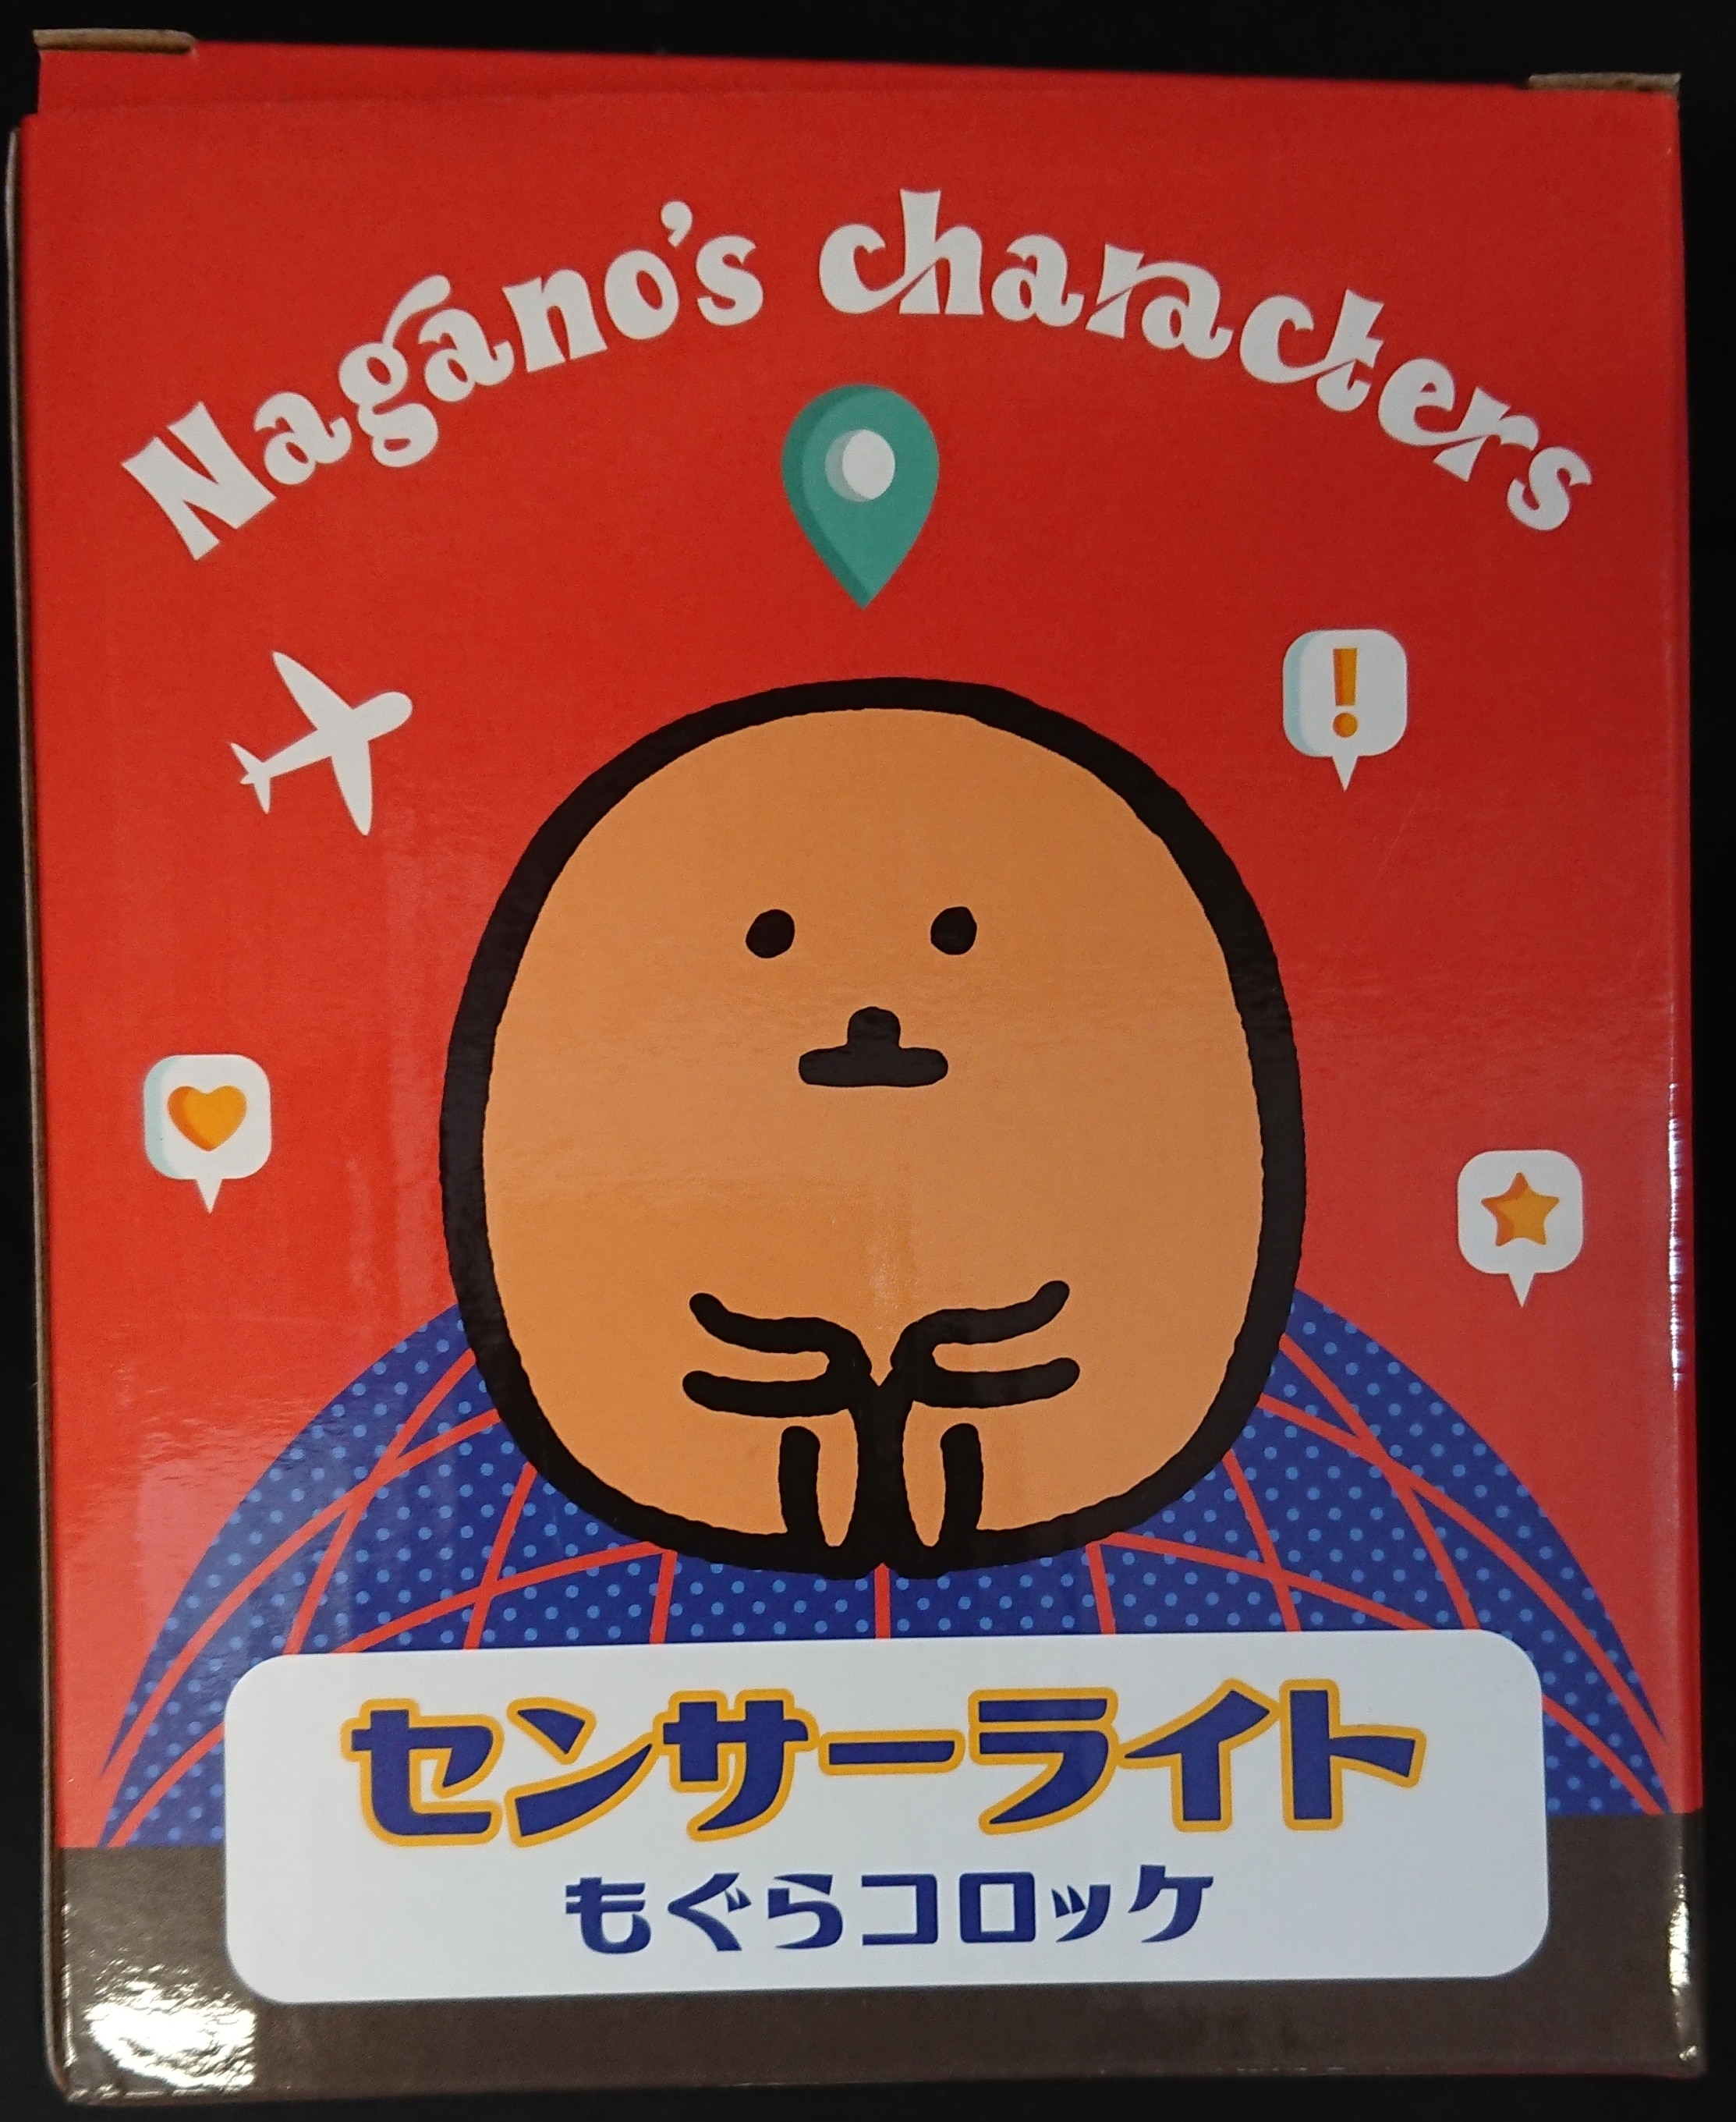 ダブルカルチャーパートナーズ Nagano's characters センサーライト ...